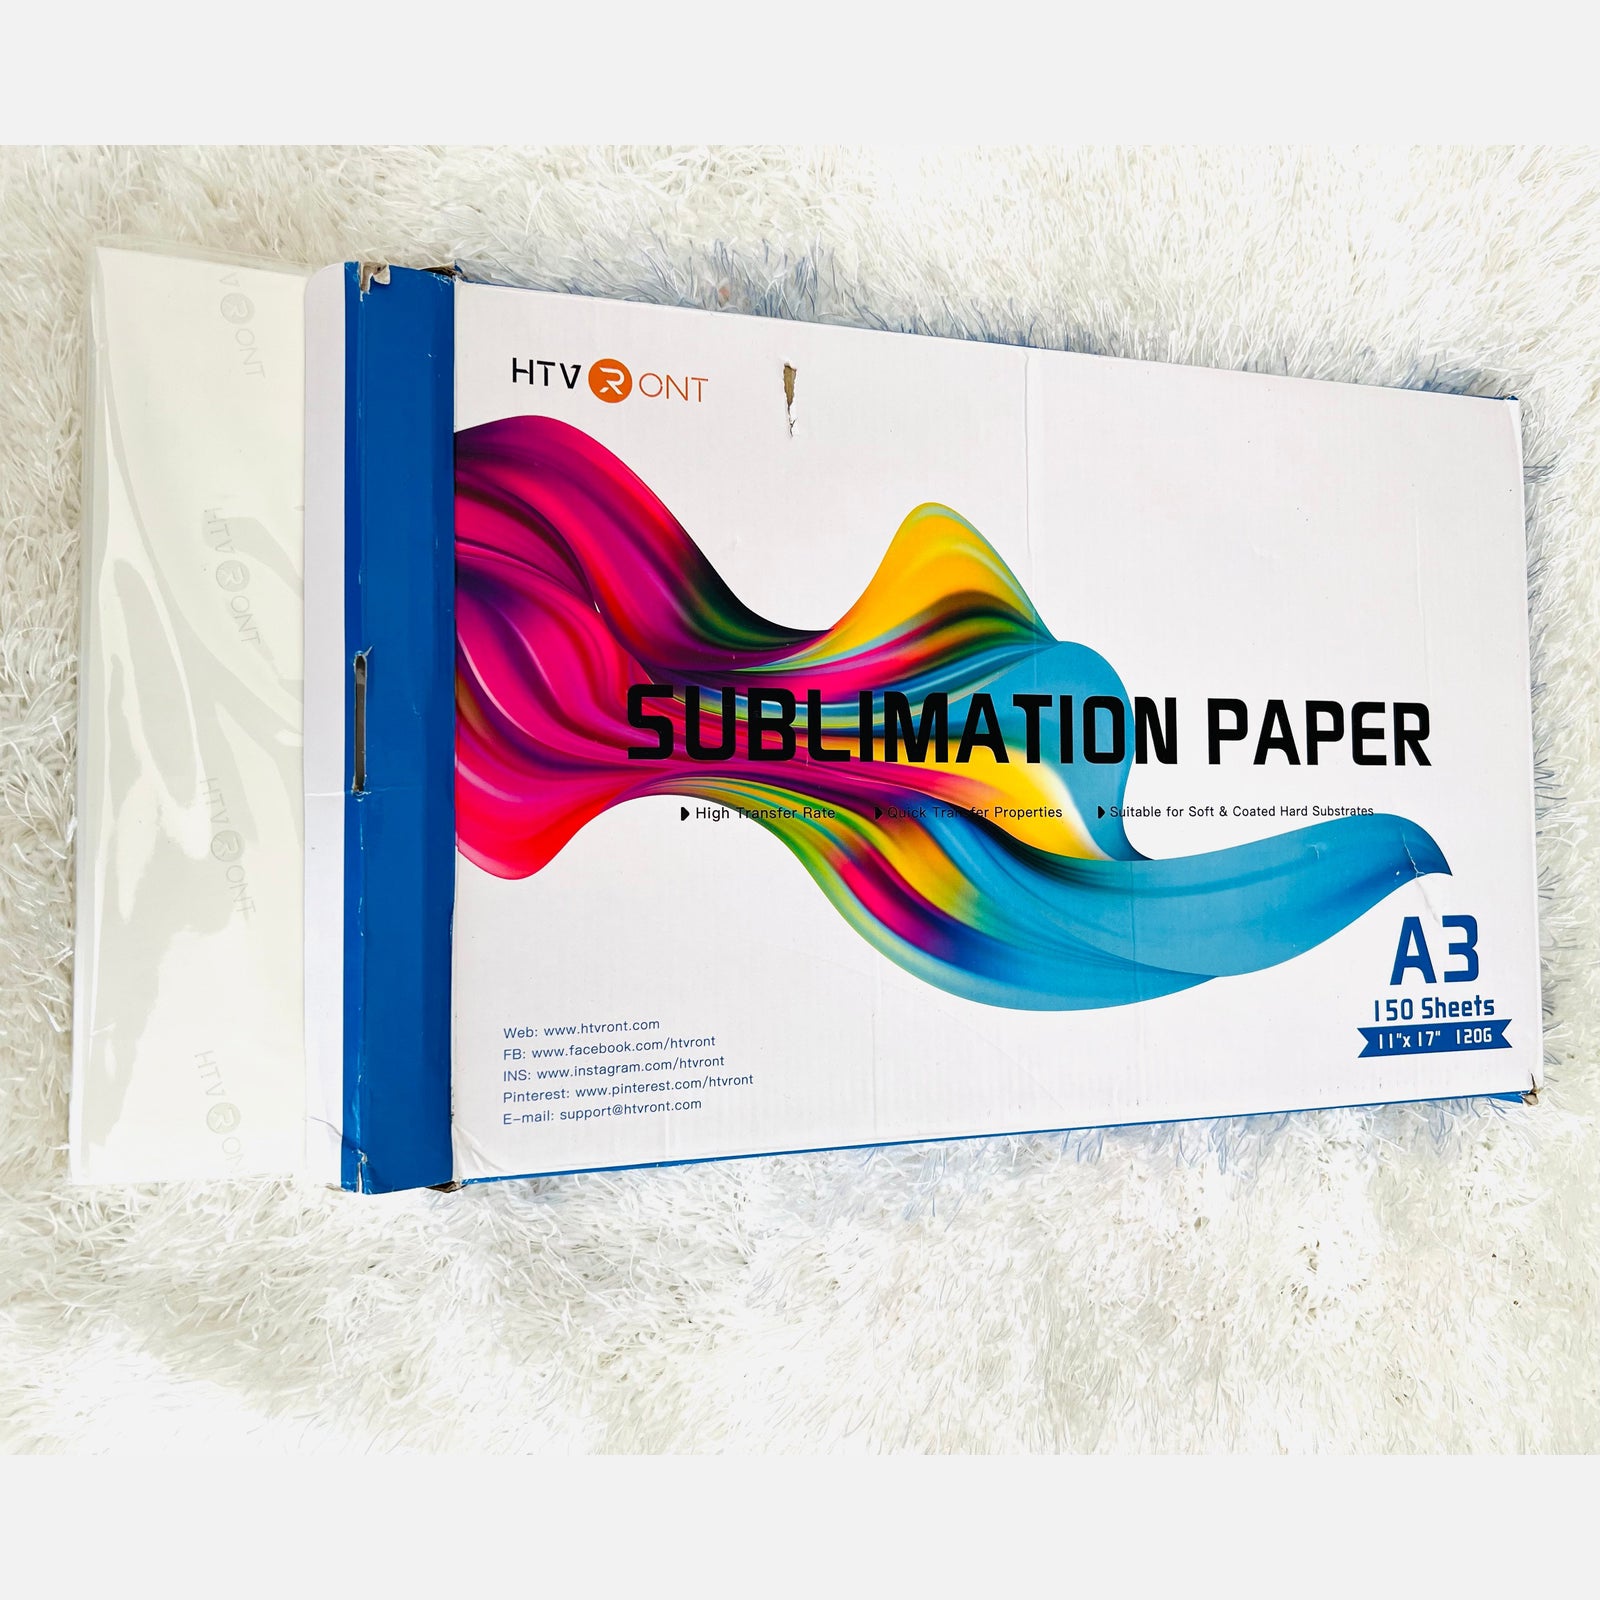 HTVRONT Sublimation Paper 11x17 - 145 pieces